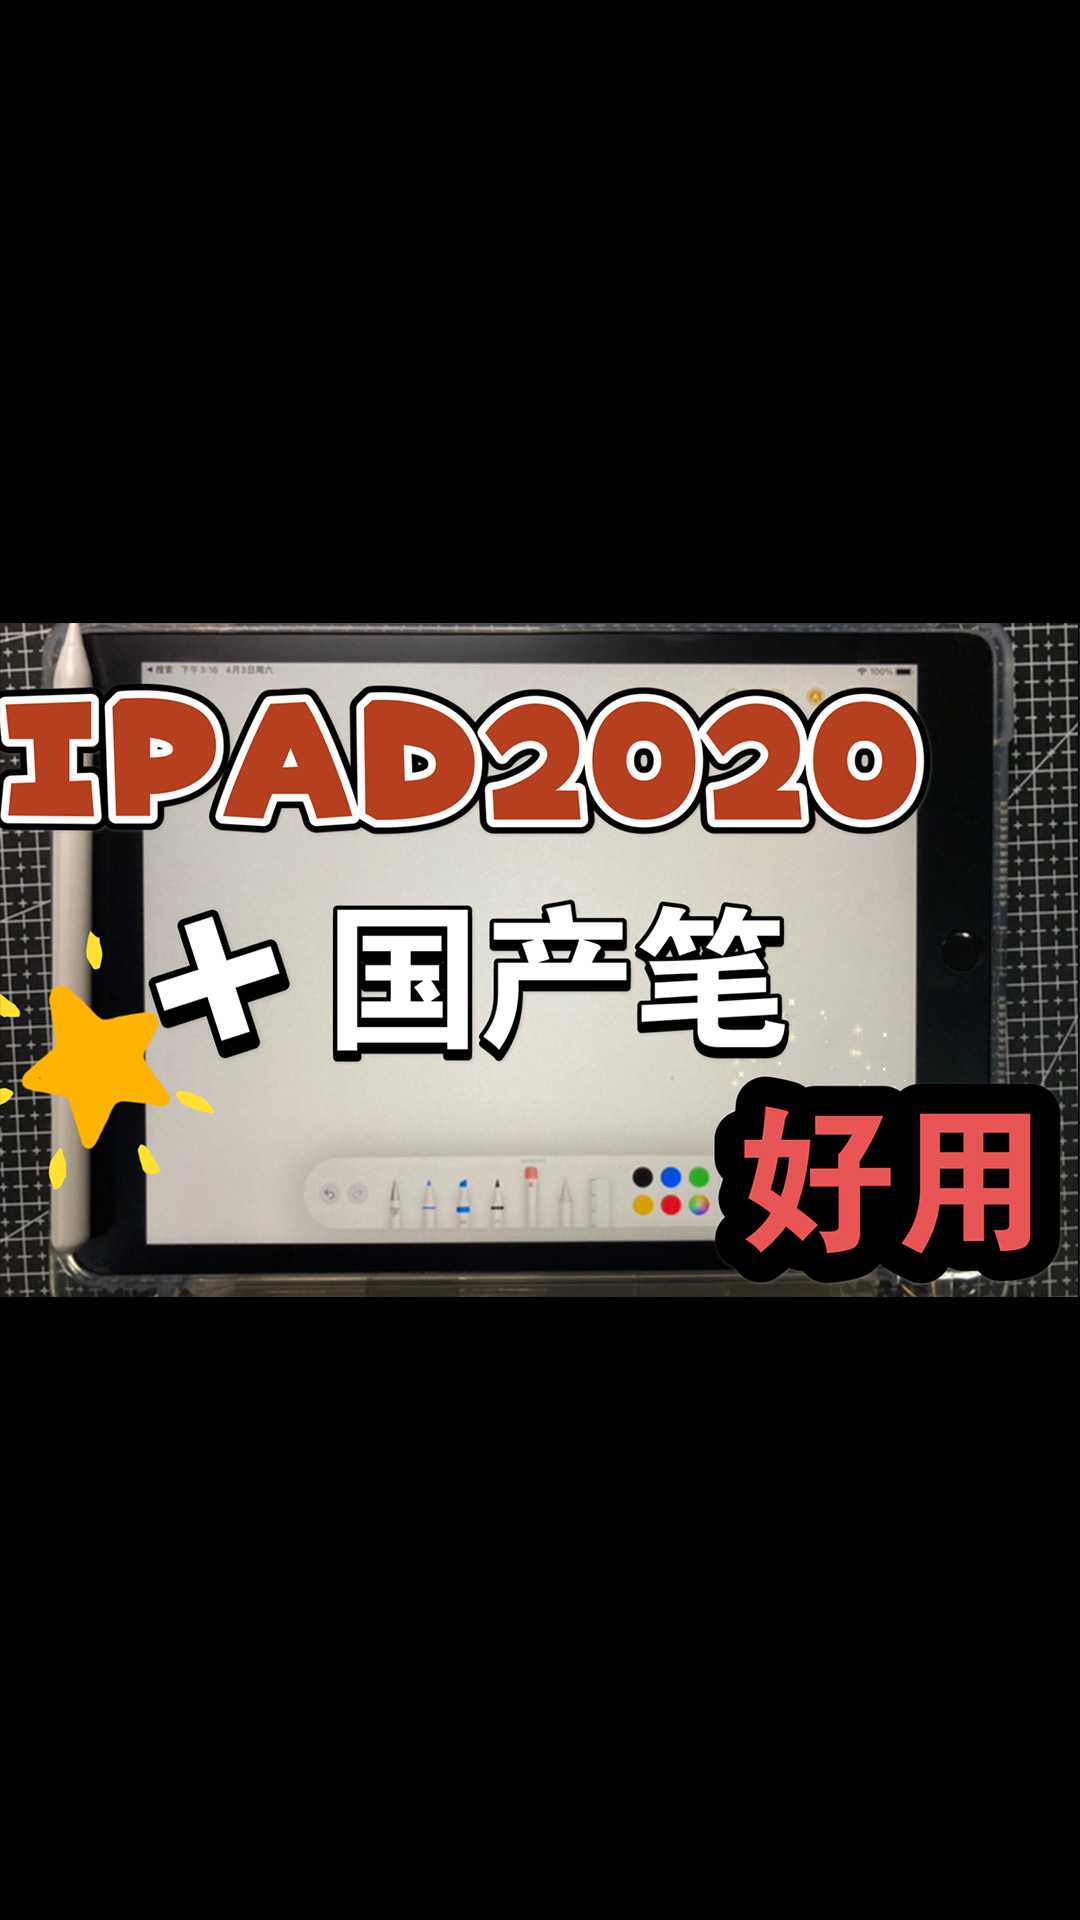 【开箱】iPad2020教育优惠版深空灰 128G终于到了+wiwu第七代国产笔使用效果.